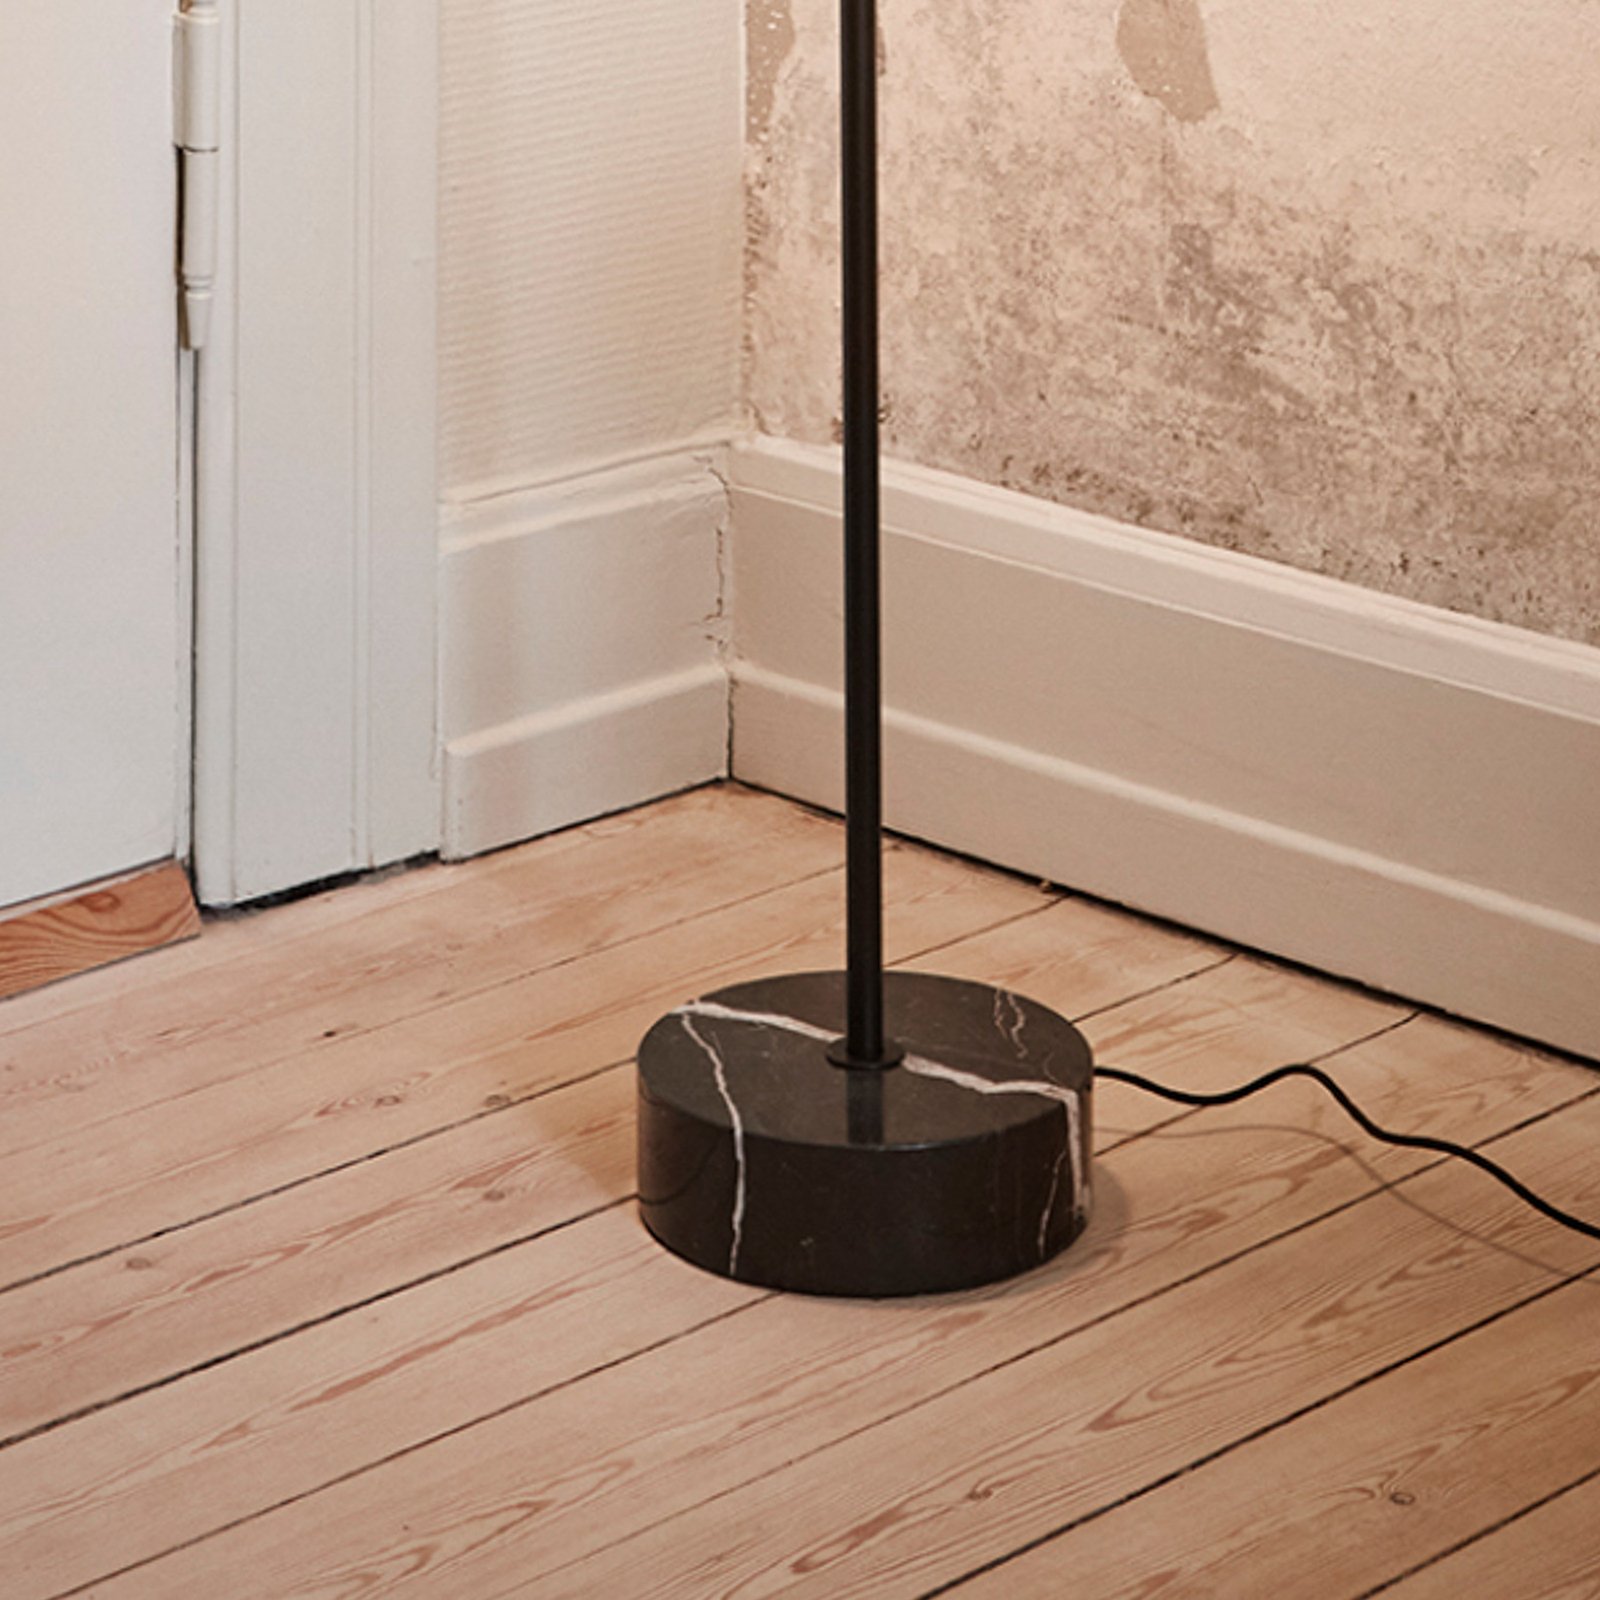 AYTM LED floor lamp Grasil, black, marble, height 127 cm